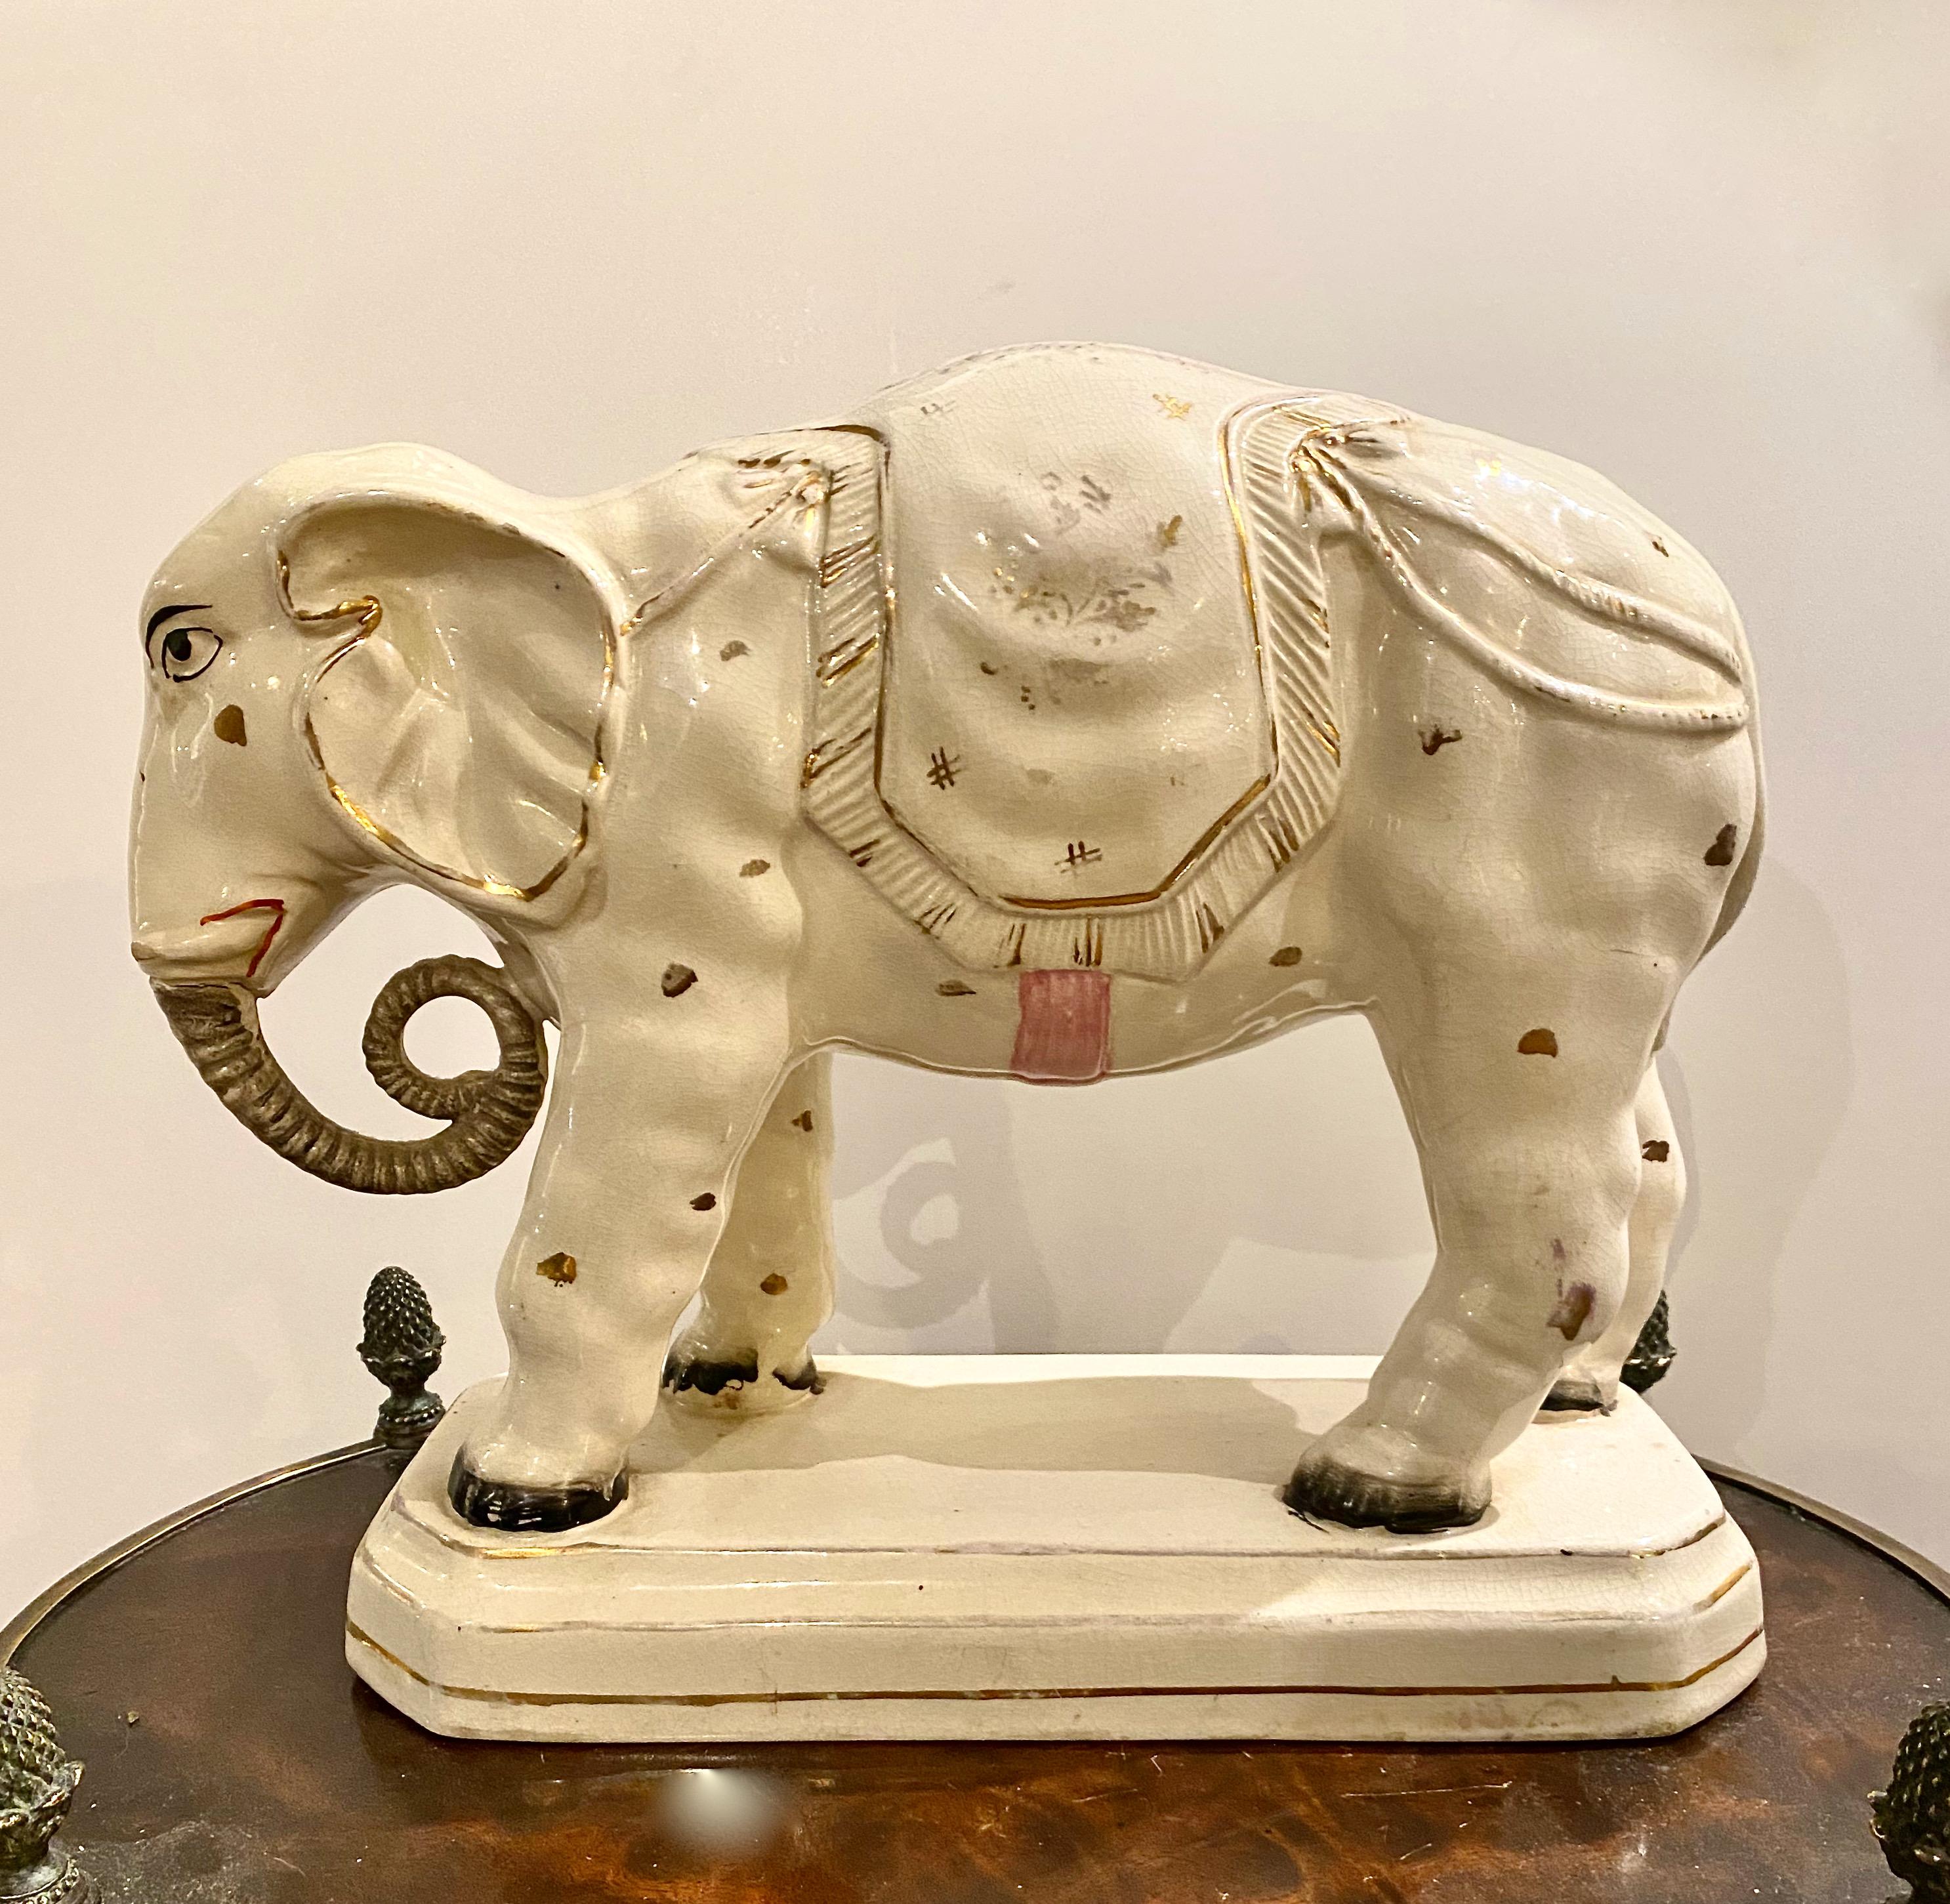 Es handelt sich um eine sehr seltene und große Staffordshire-Figur eines indischen Elefanten auf einem Sockel, gekleidet in seine traditionellen Faltenwürfe. Der Elefant stammt aus der Zeit um 1880 und ist insgesamt in sehr gutem Zustand. Es gibt